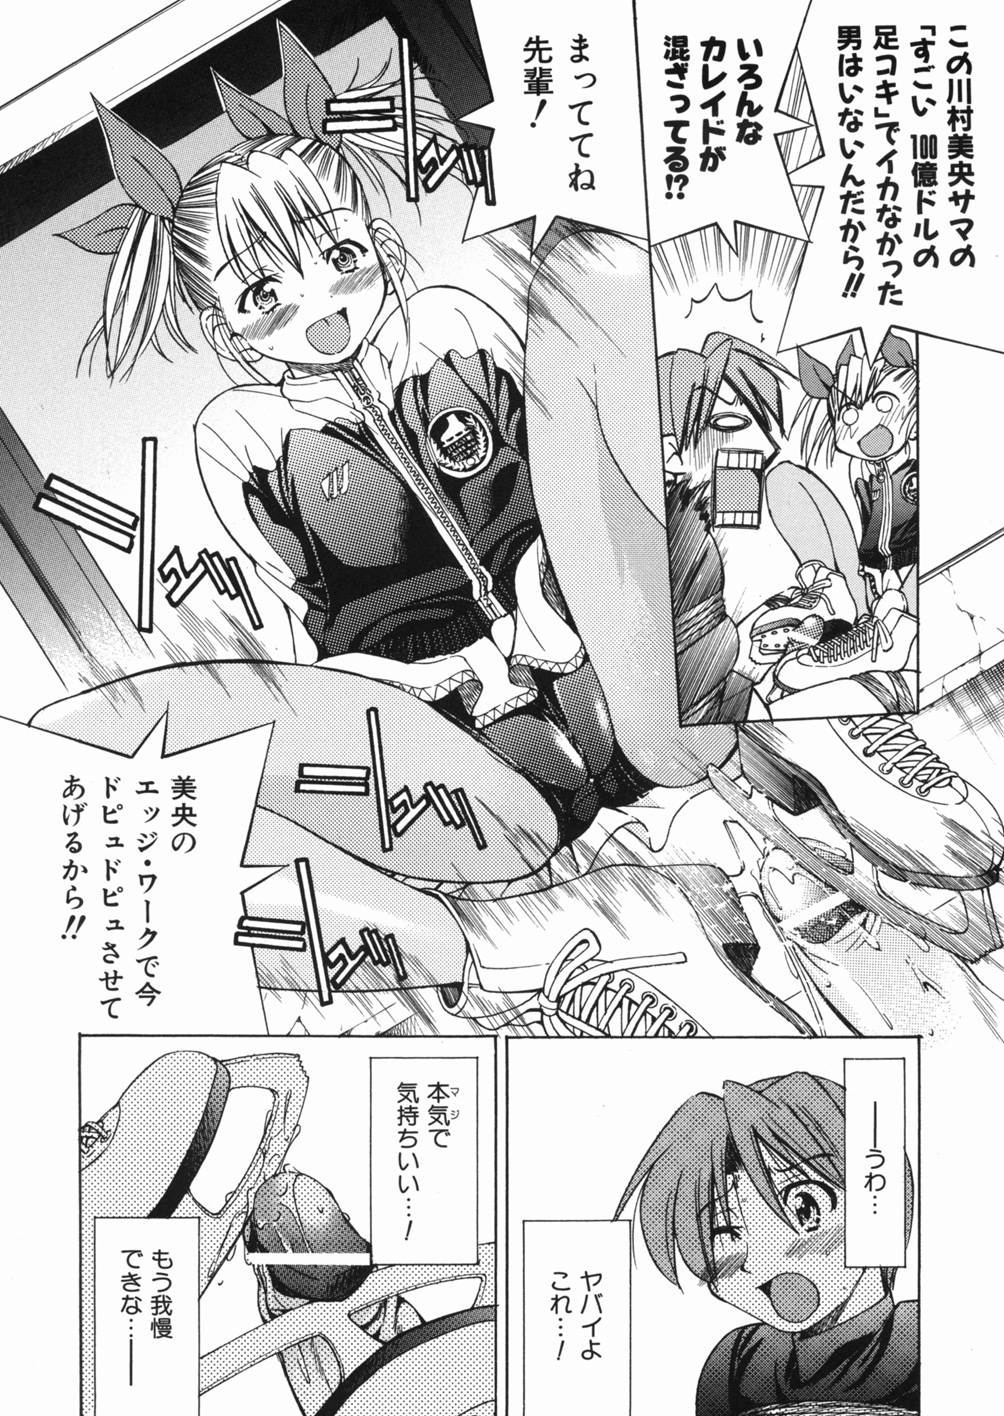 [Inoue Yoshihisa] Sunao page 46 full